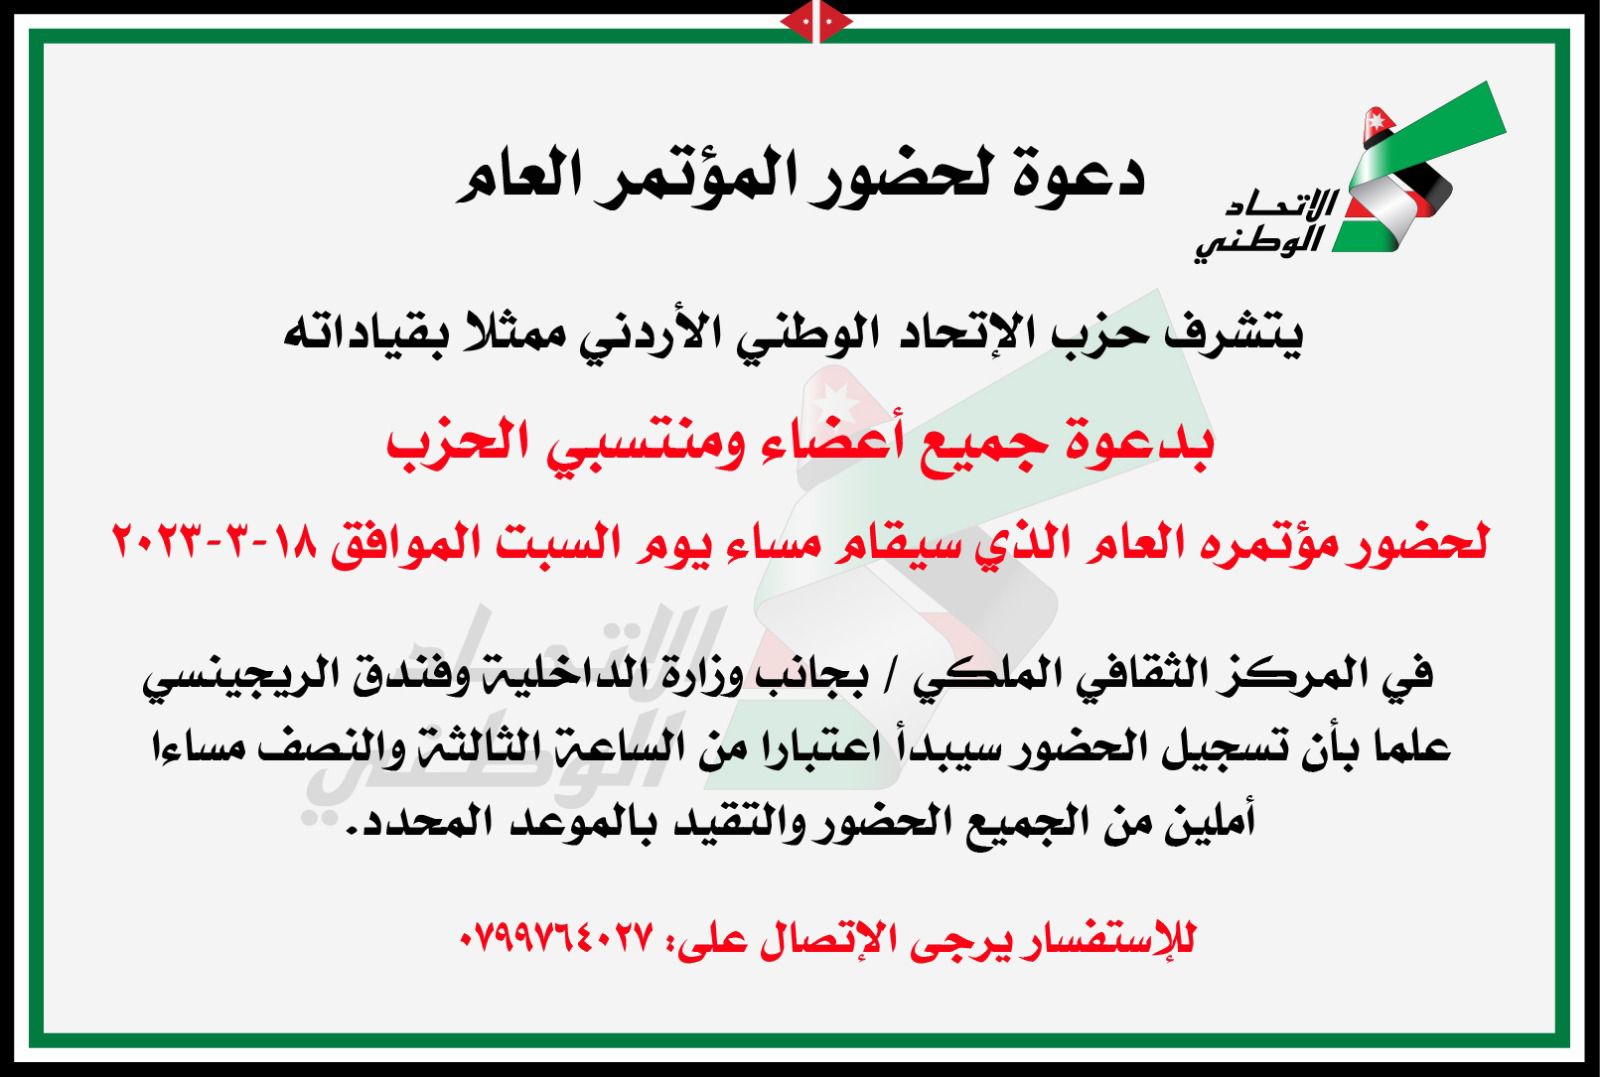  دعوة لحضور مؤتمر حزب الاتحاد الوطني الأردني السبت القادم  